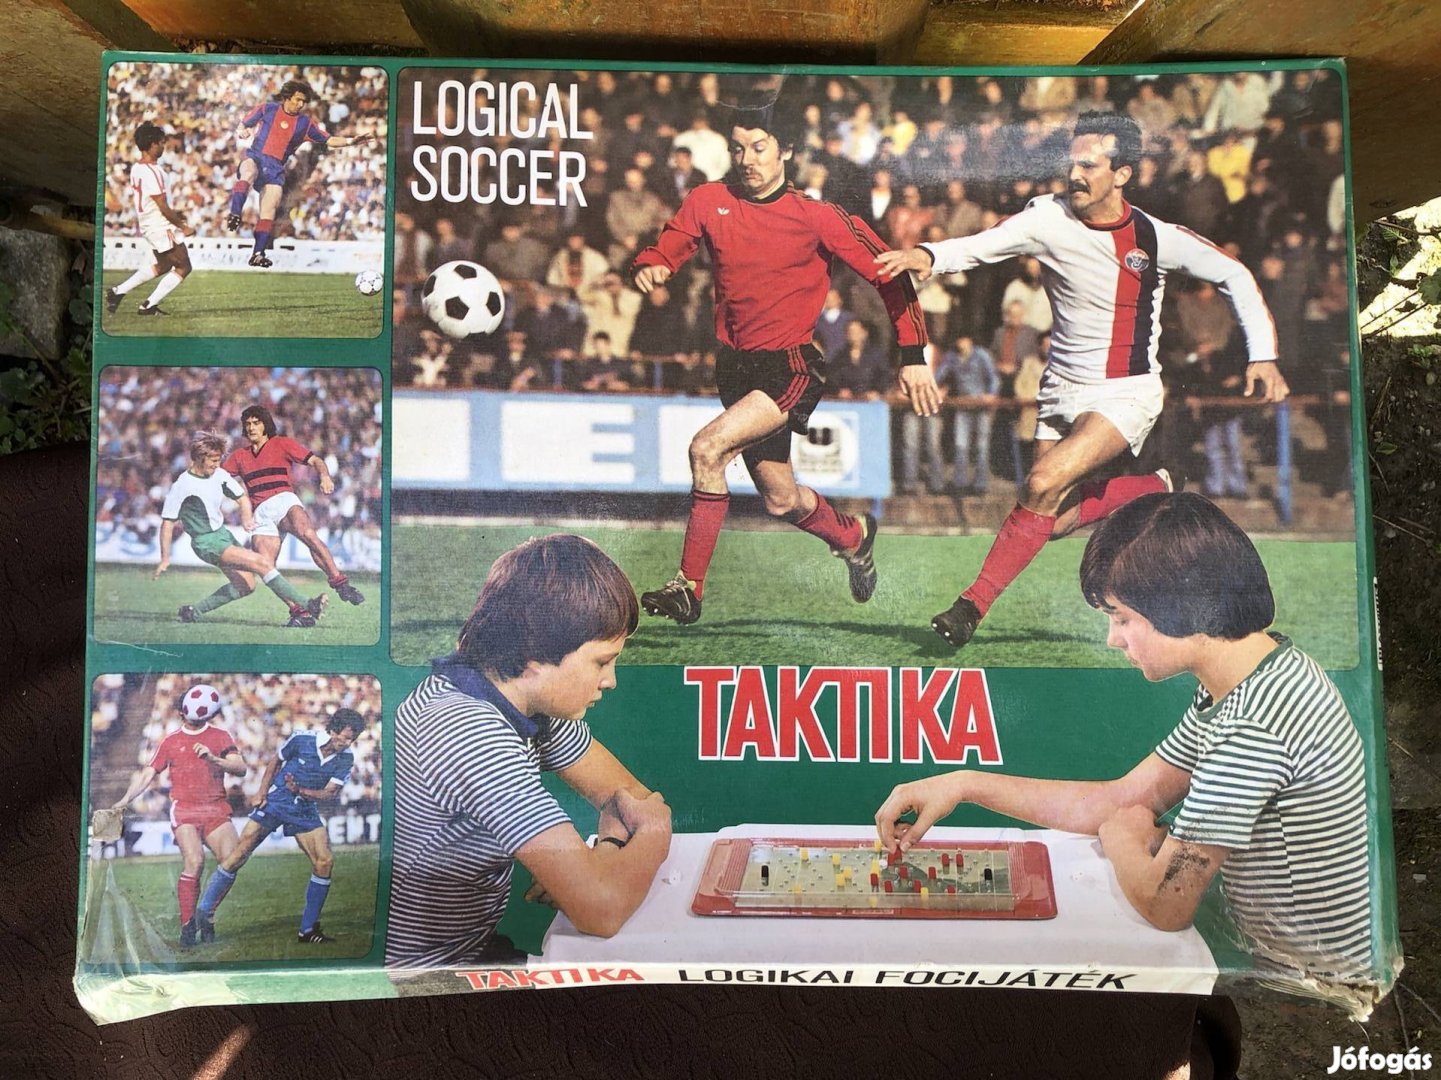 Retró társasjáték ,Logical Soccer:Taktika, focis játék 5000 Ft :Lenti